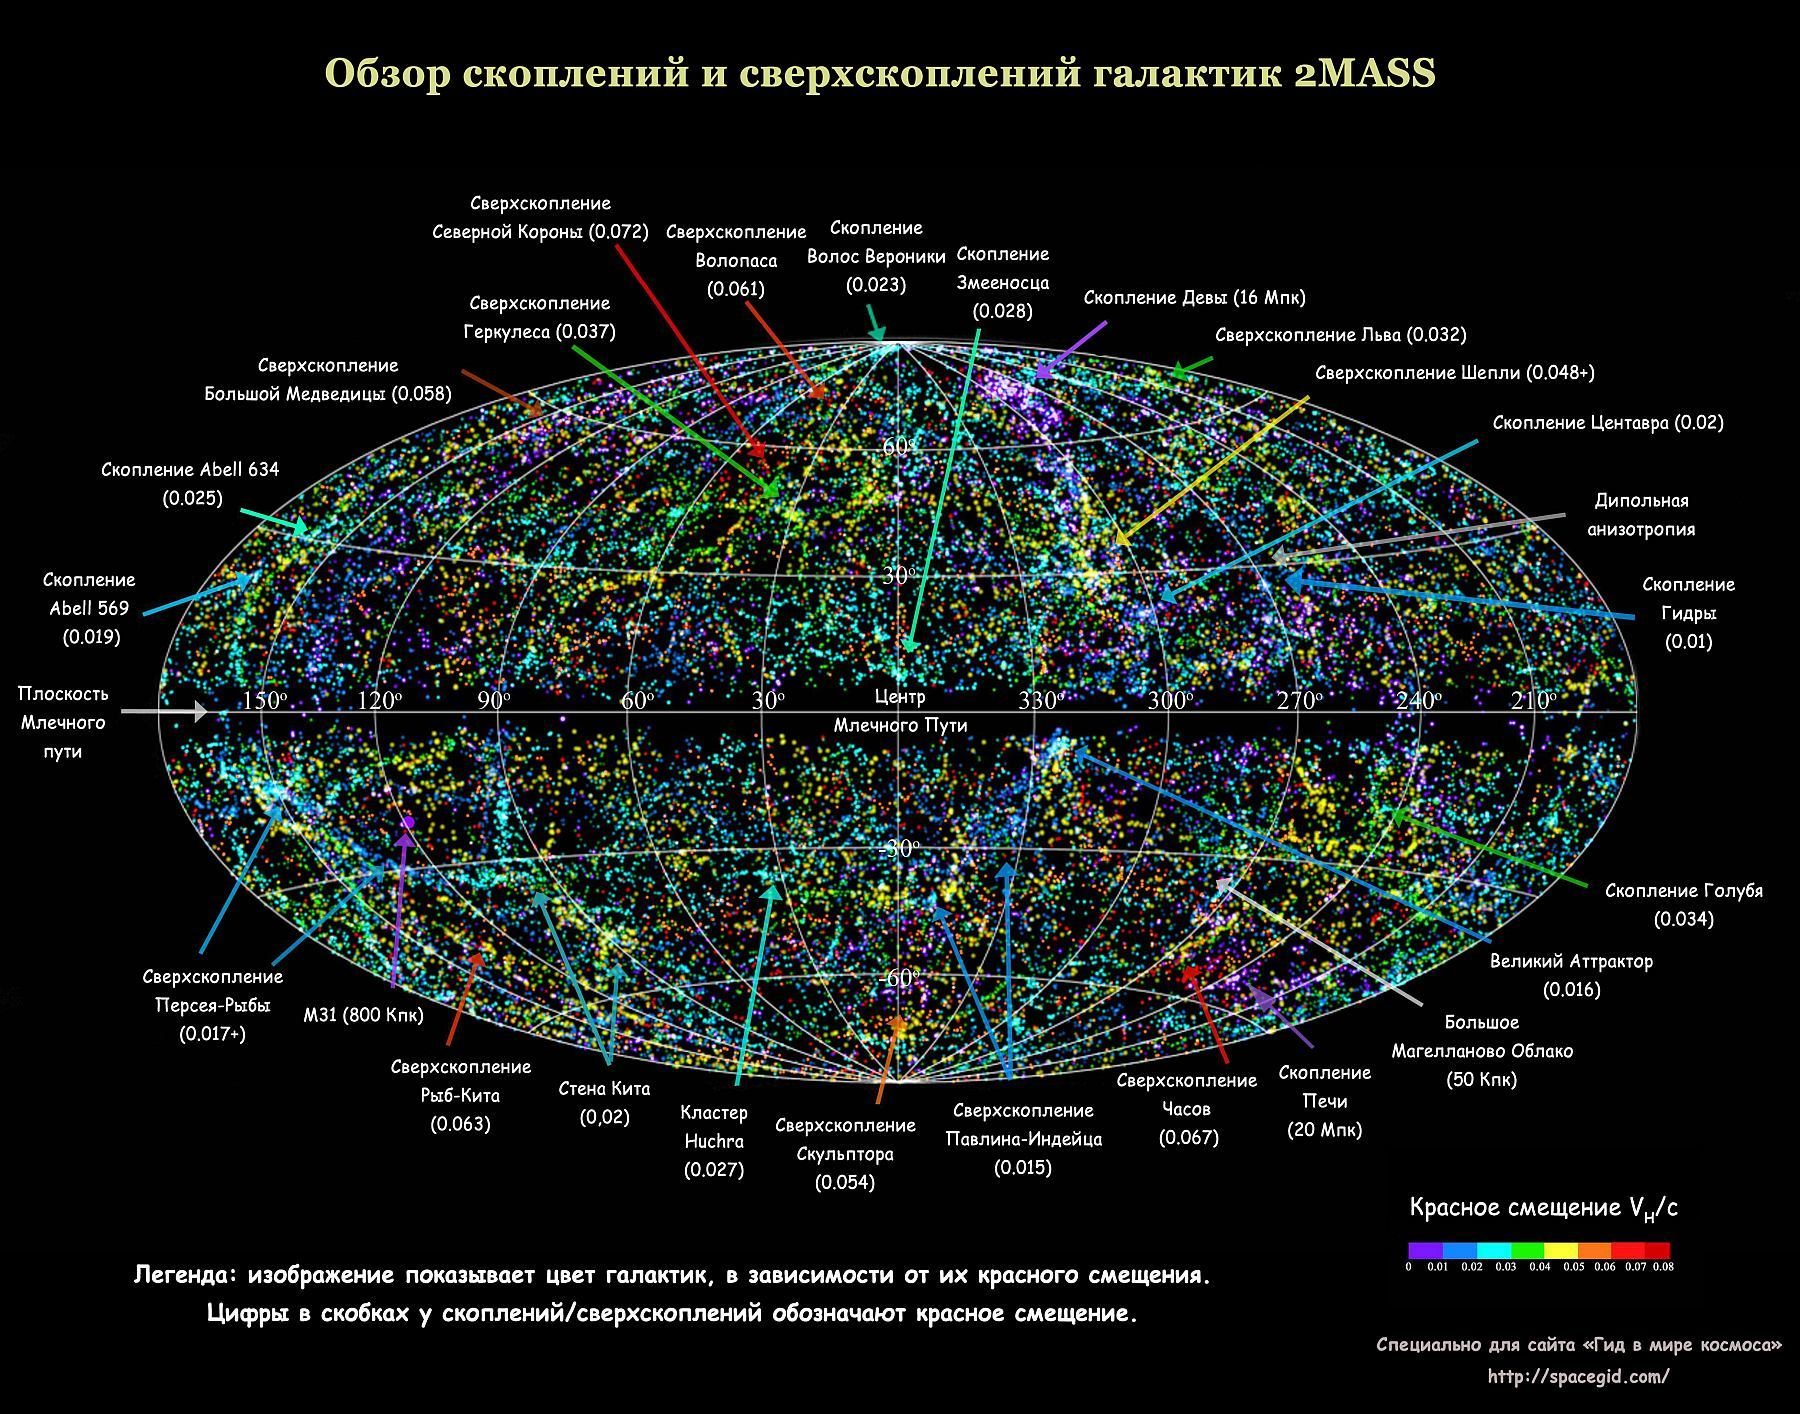 Vue d'ensemble des amas et superamas de galaxies 2MASS. Le Grand Attracteur est indiqué en bas à droite